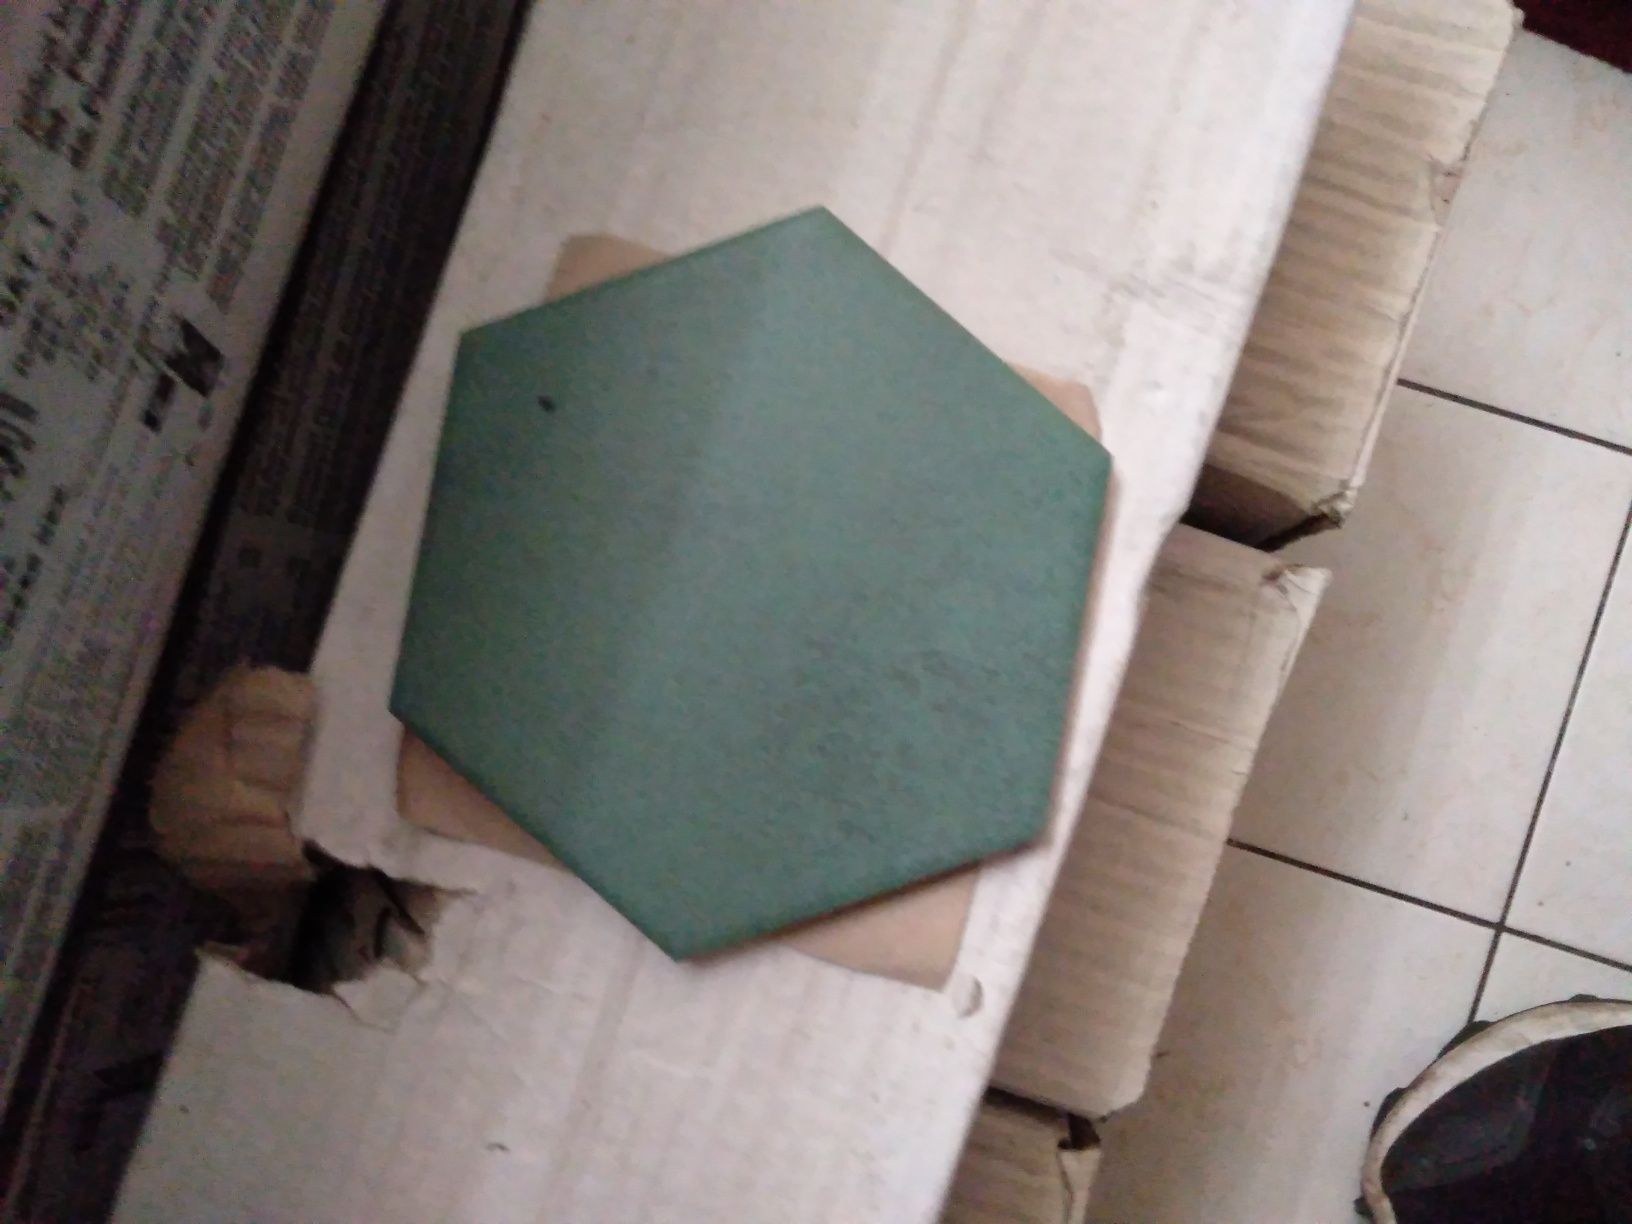 Plytki green hex 11×12.5